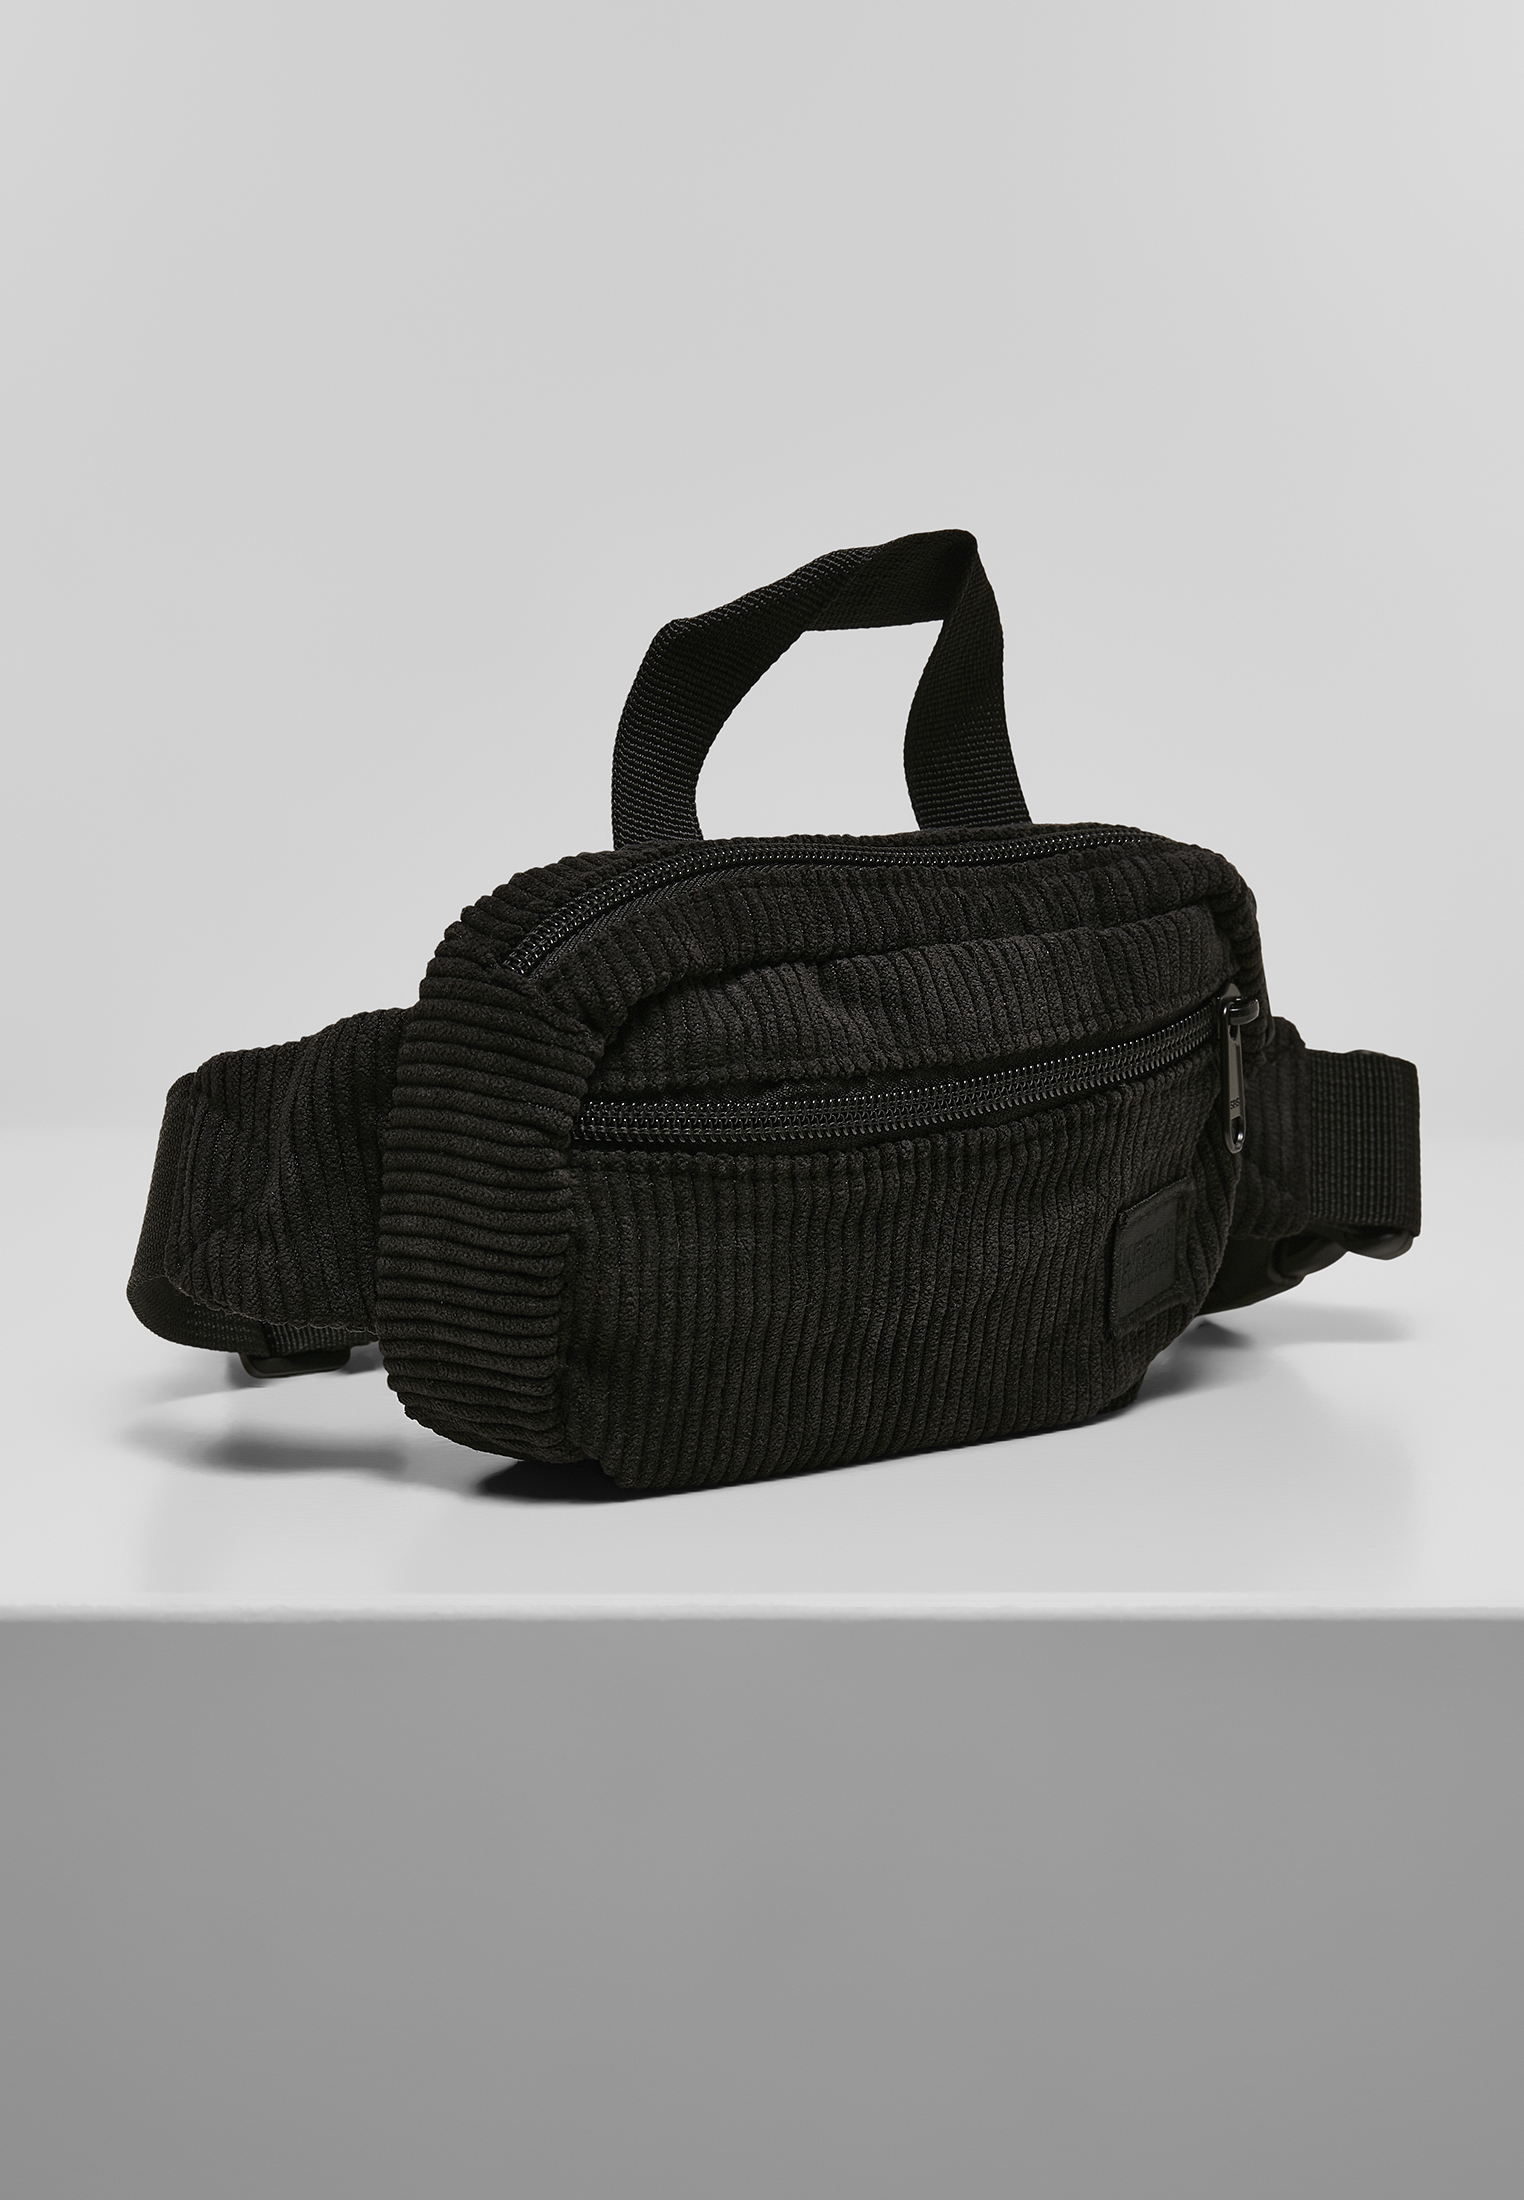 Taschen Corduroy Hip Bag in Farbe black